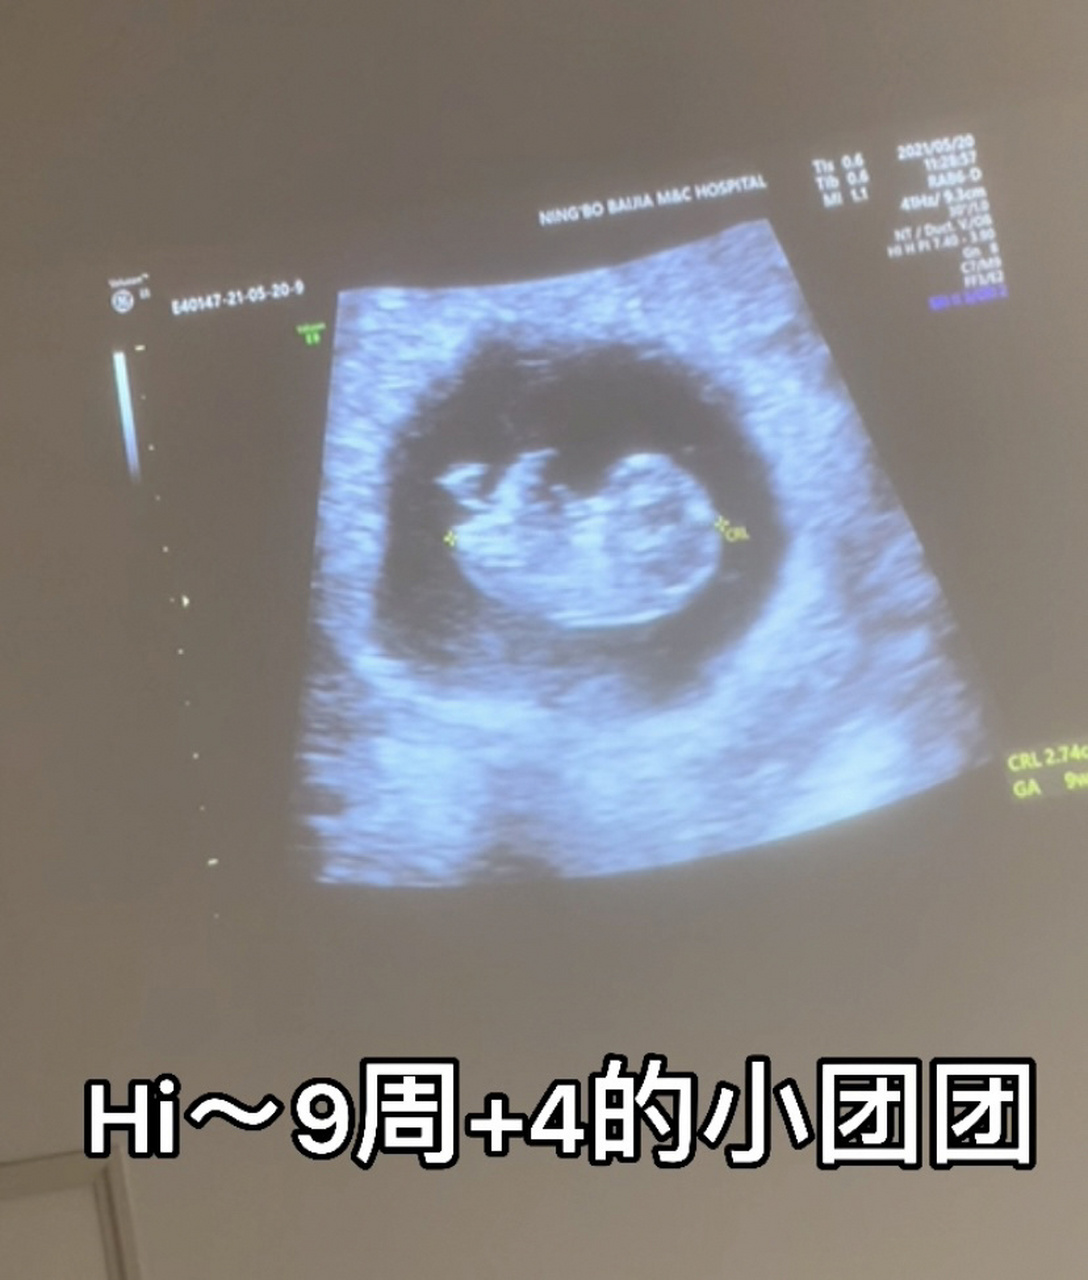 孕9周发育情况和图片图片